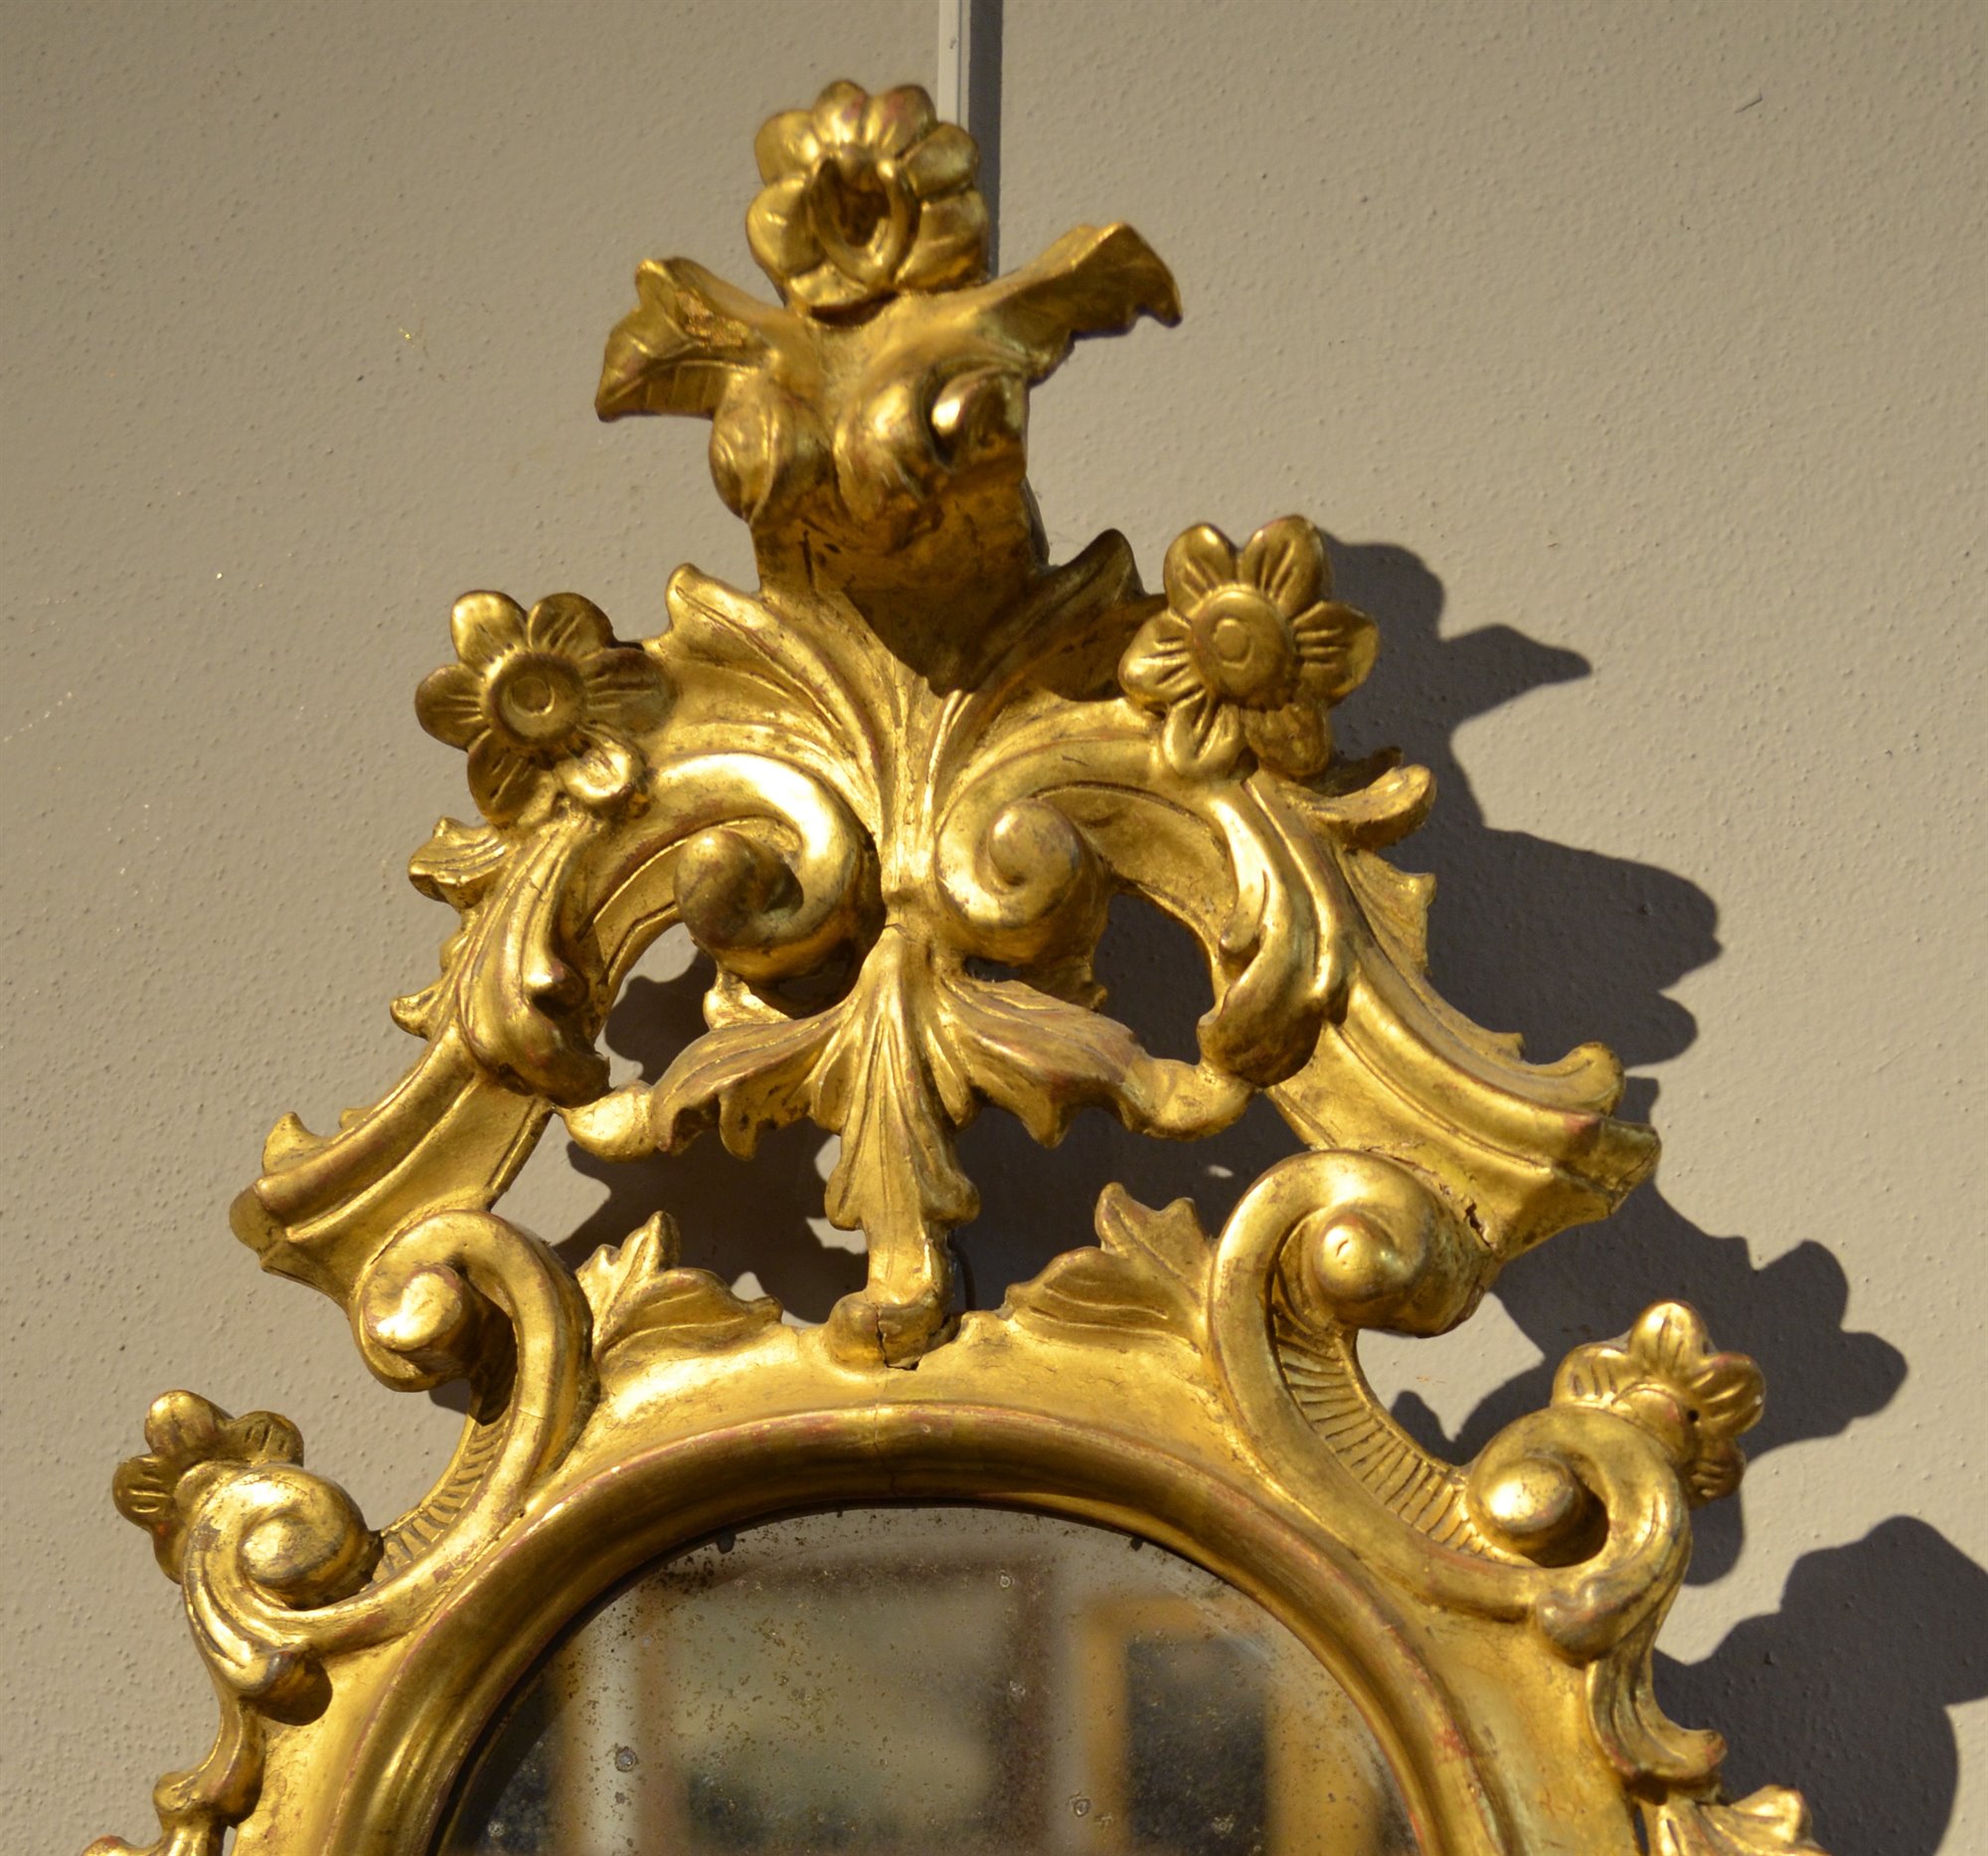 Coppia di splendide specchiere in legno dorato ed intagliato